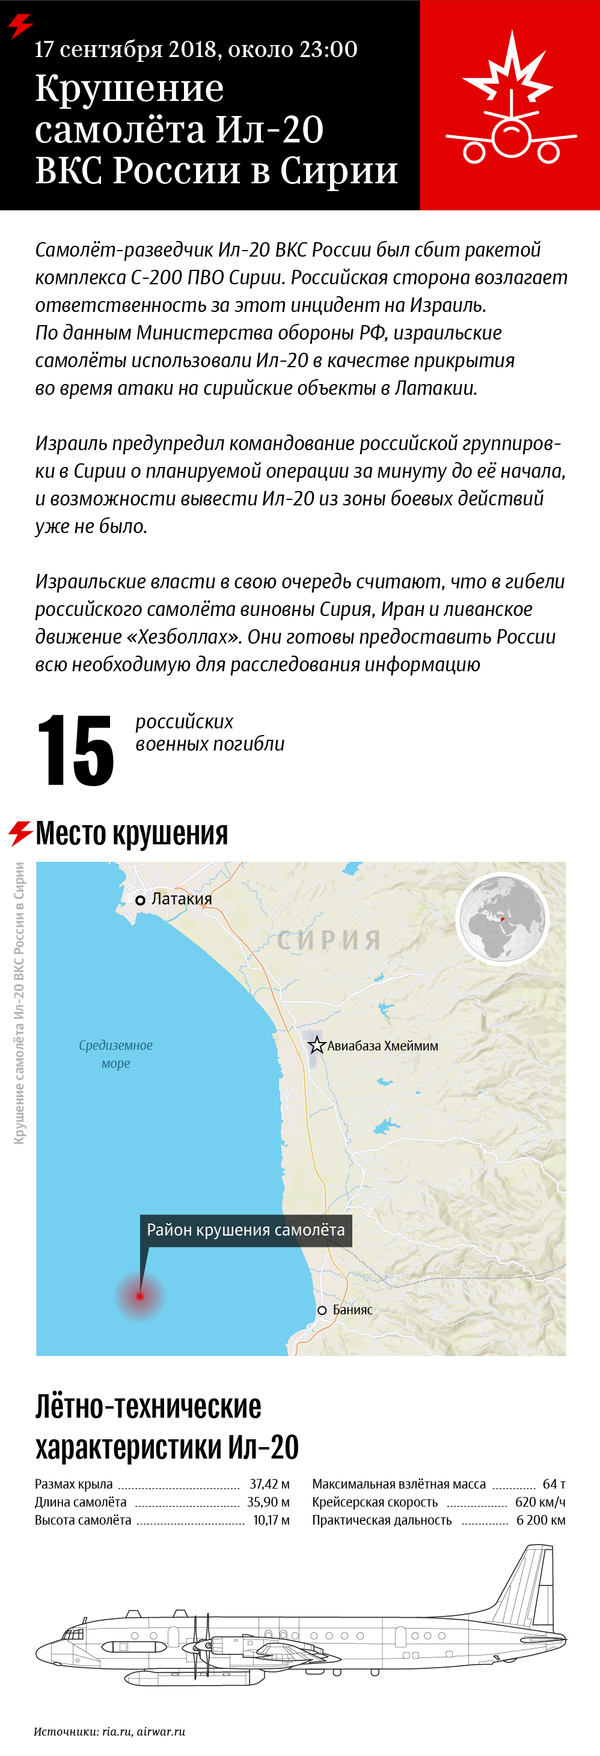 Крушение самолета Ил-20 ВКС России в Сирии - Sputnik Беларусь